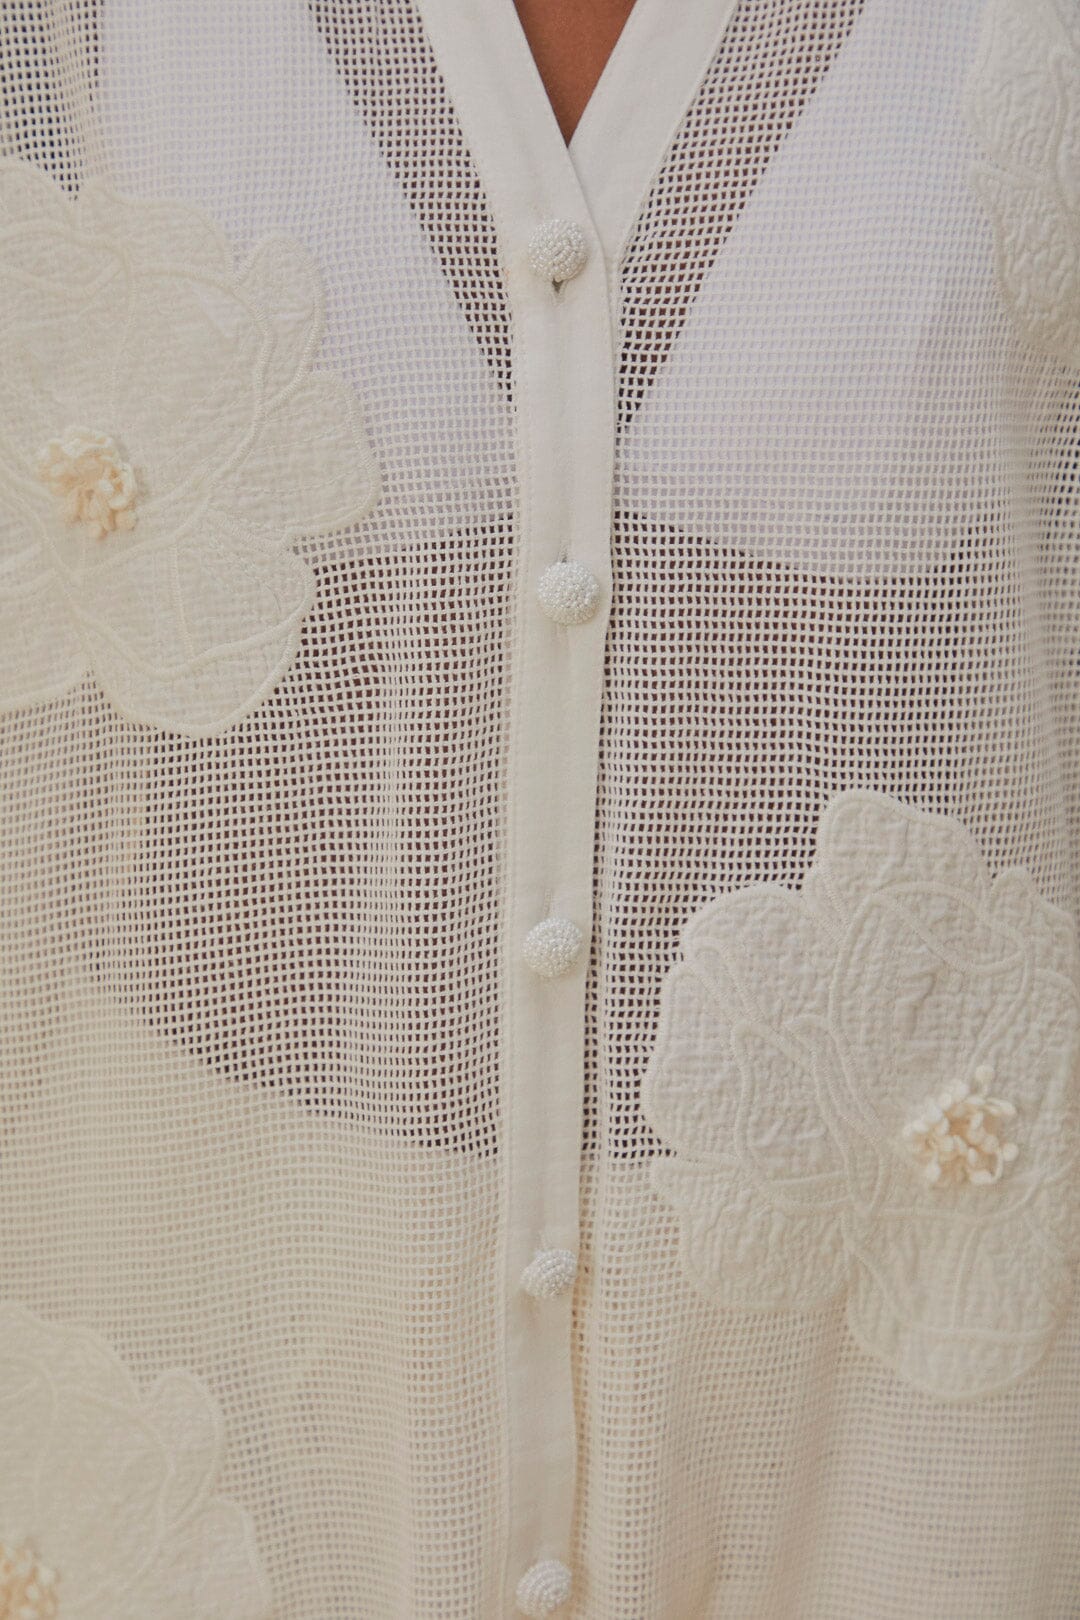 White Flower Shirt